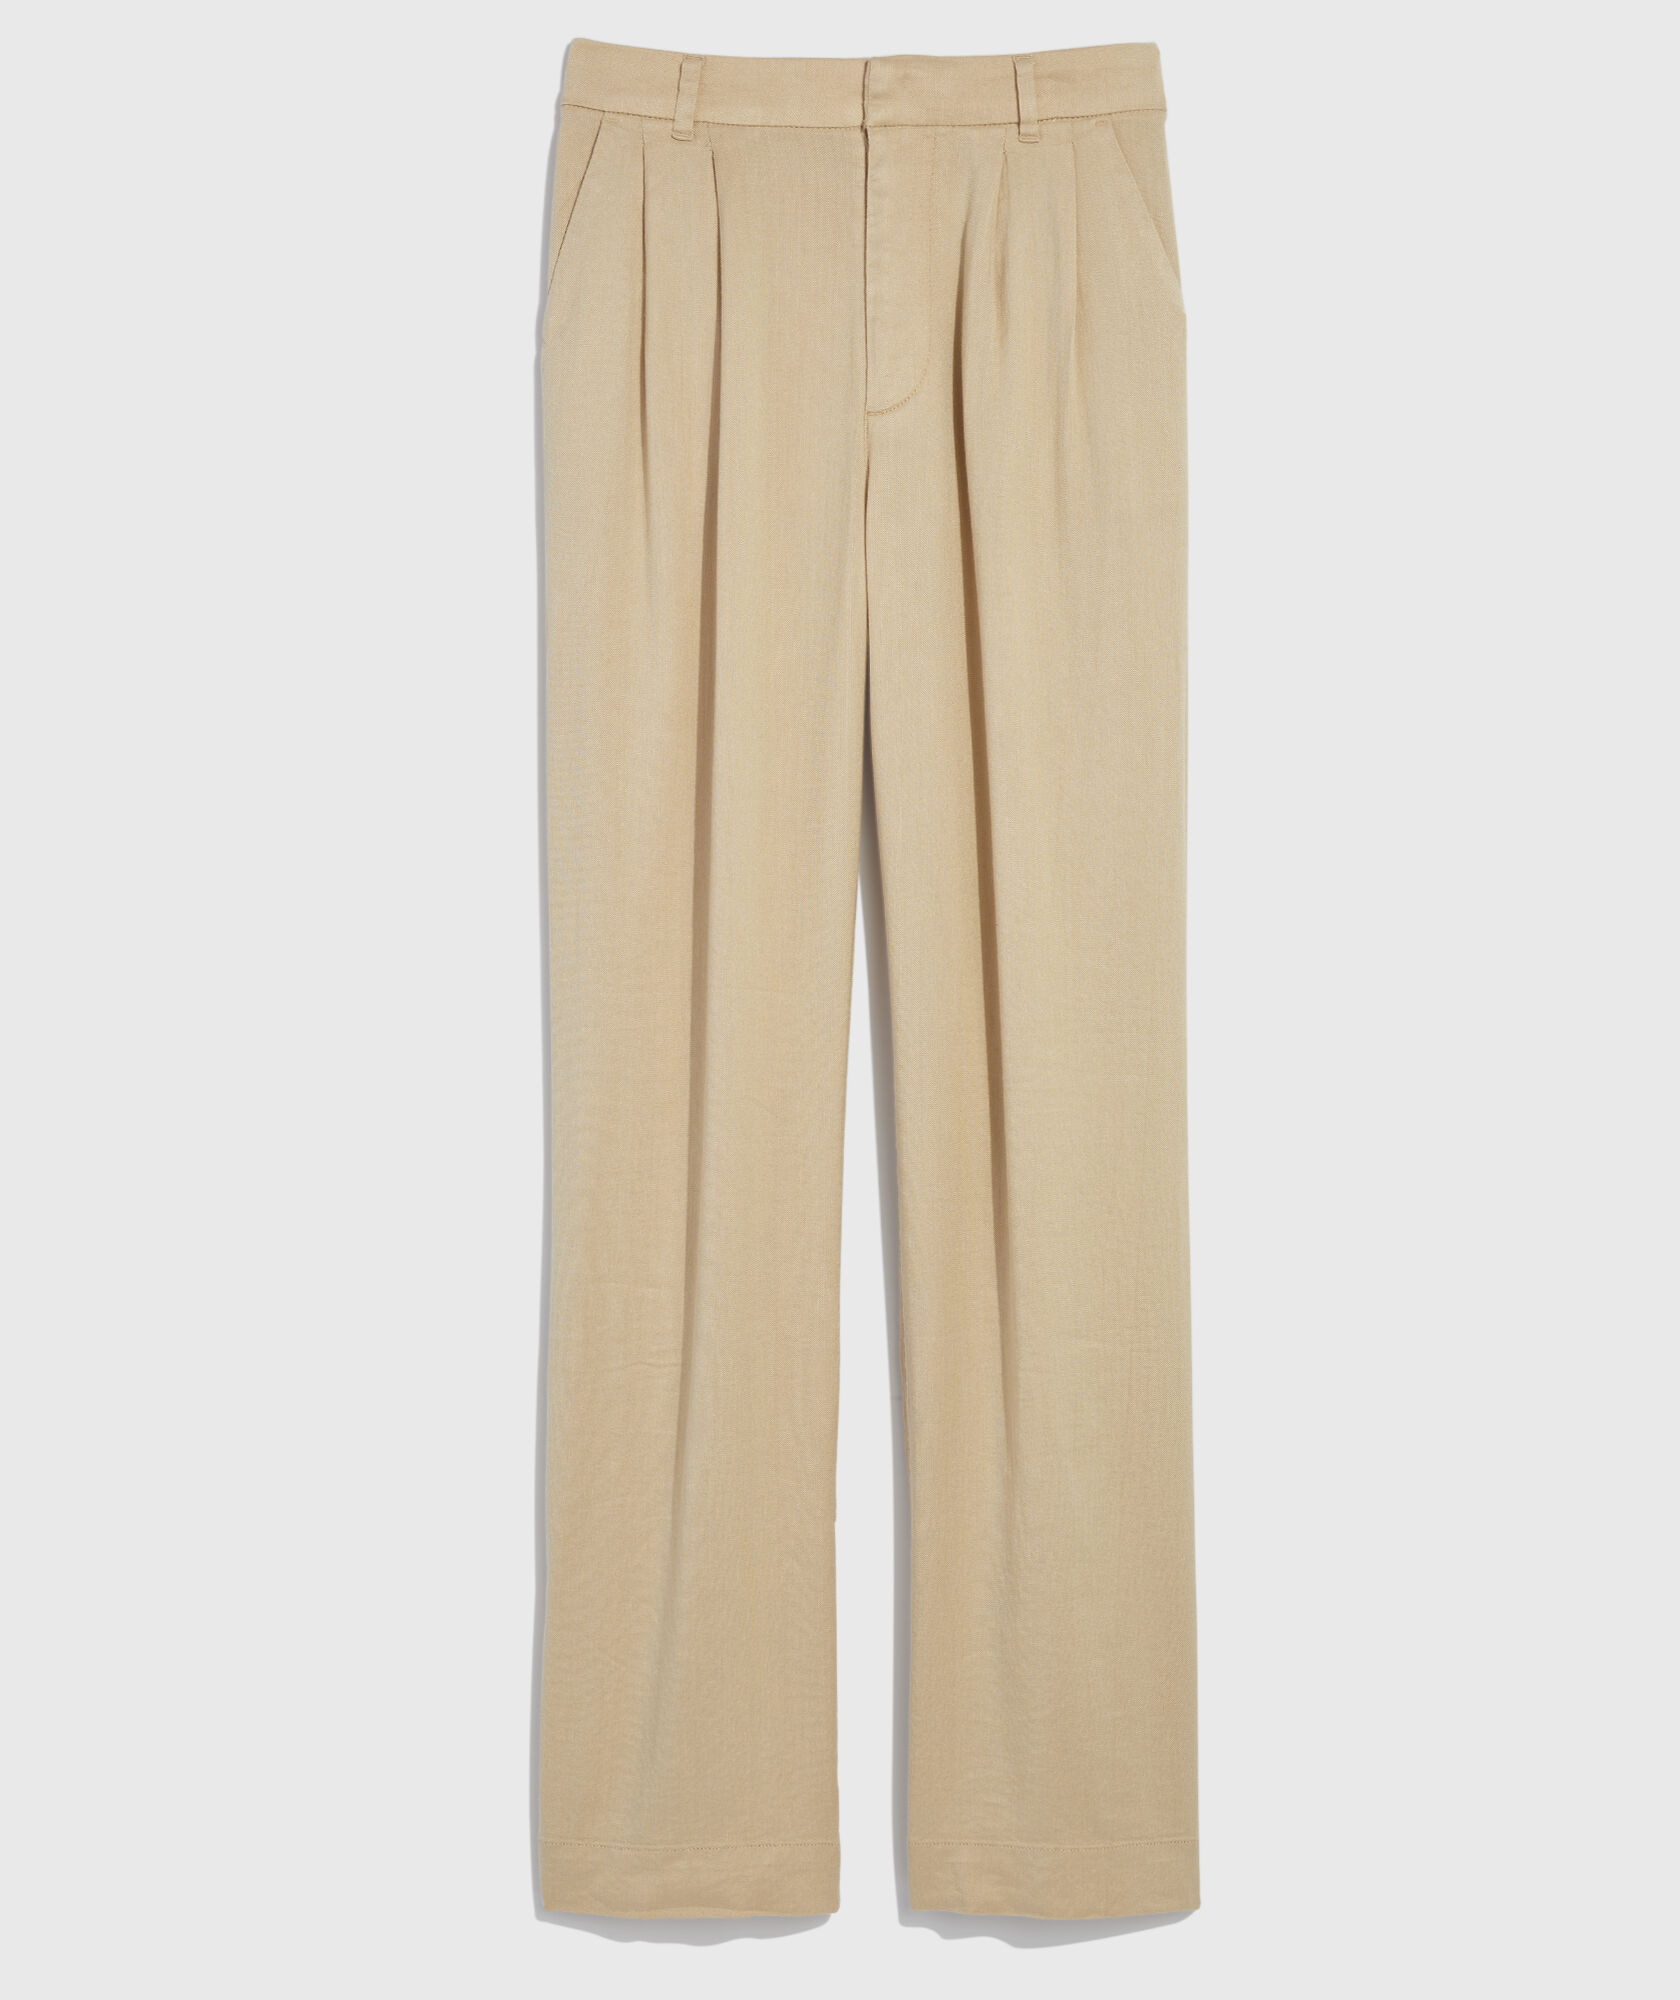 Linen blend trousers Color multicolor - SINSAY - 5144F-MLC